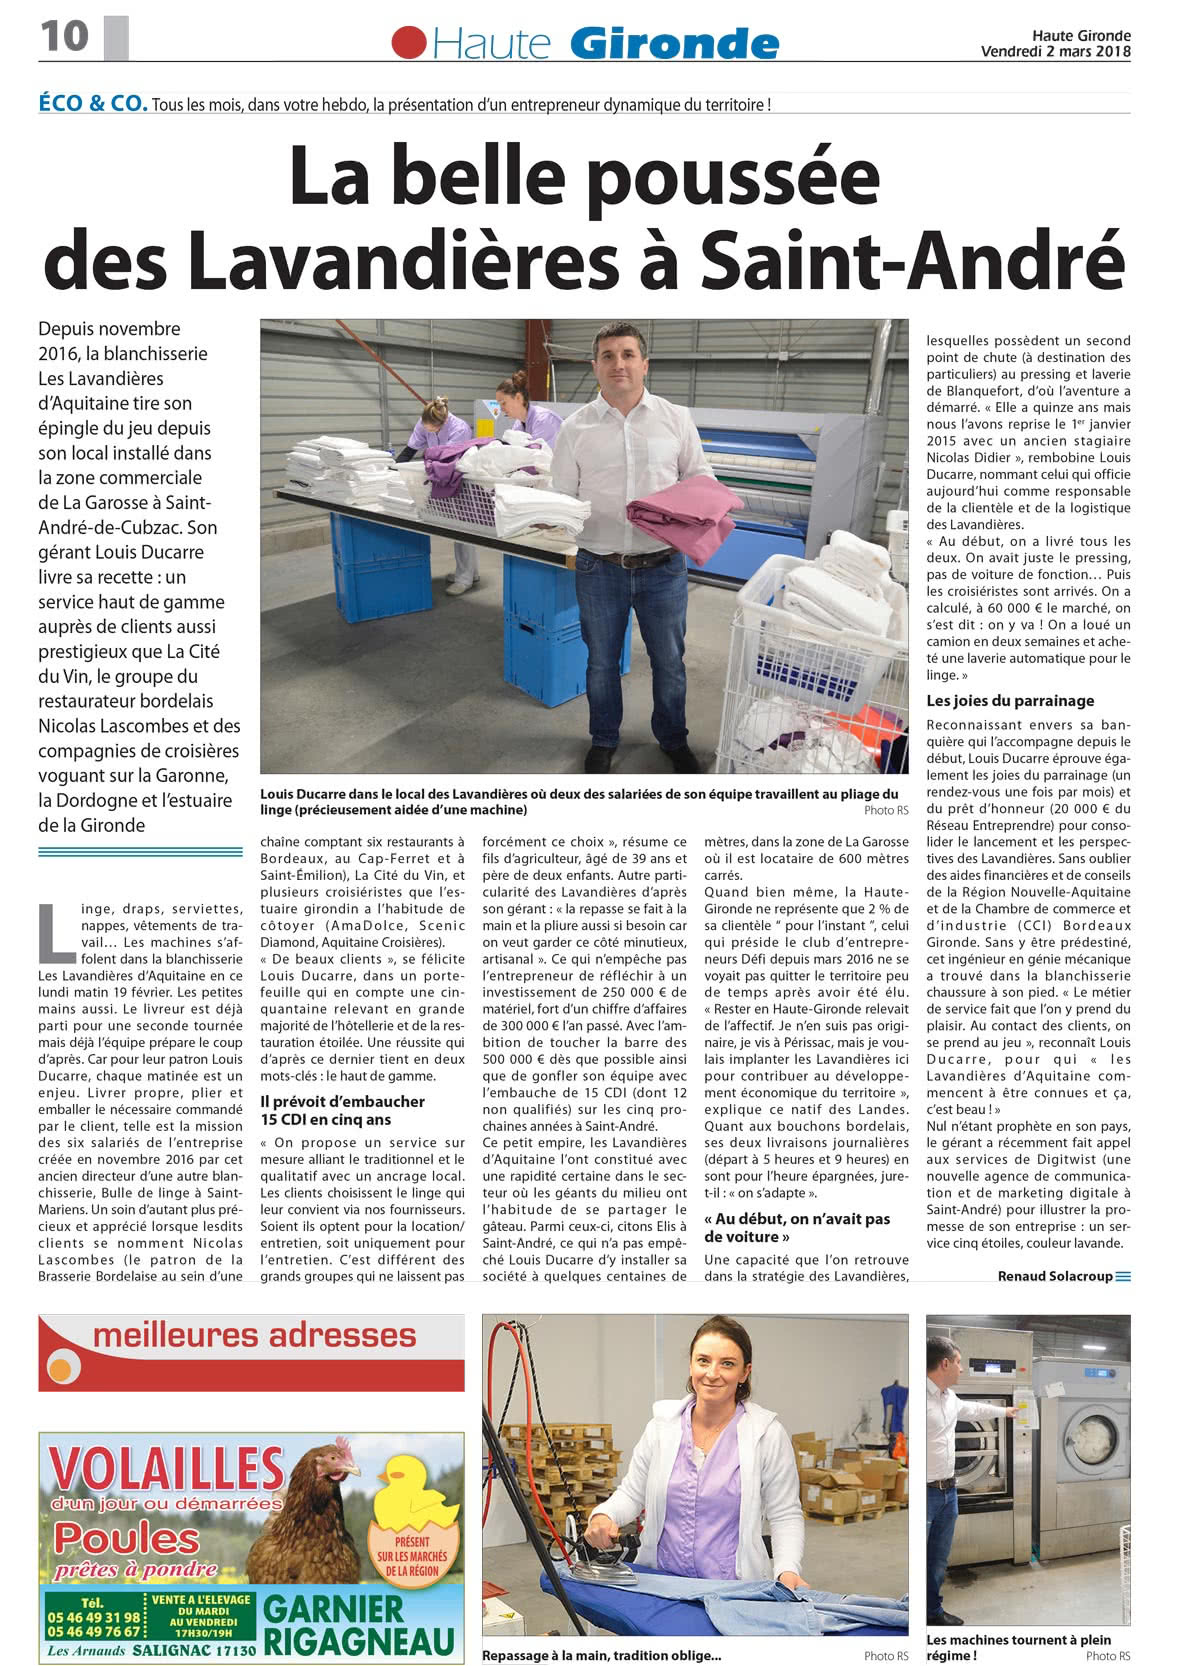 L'article de presse du journal HAUTE GIRONDE : La belle poussée des Lavandières à Saint-André